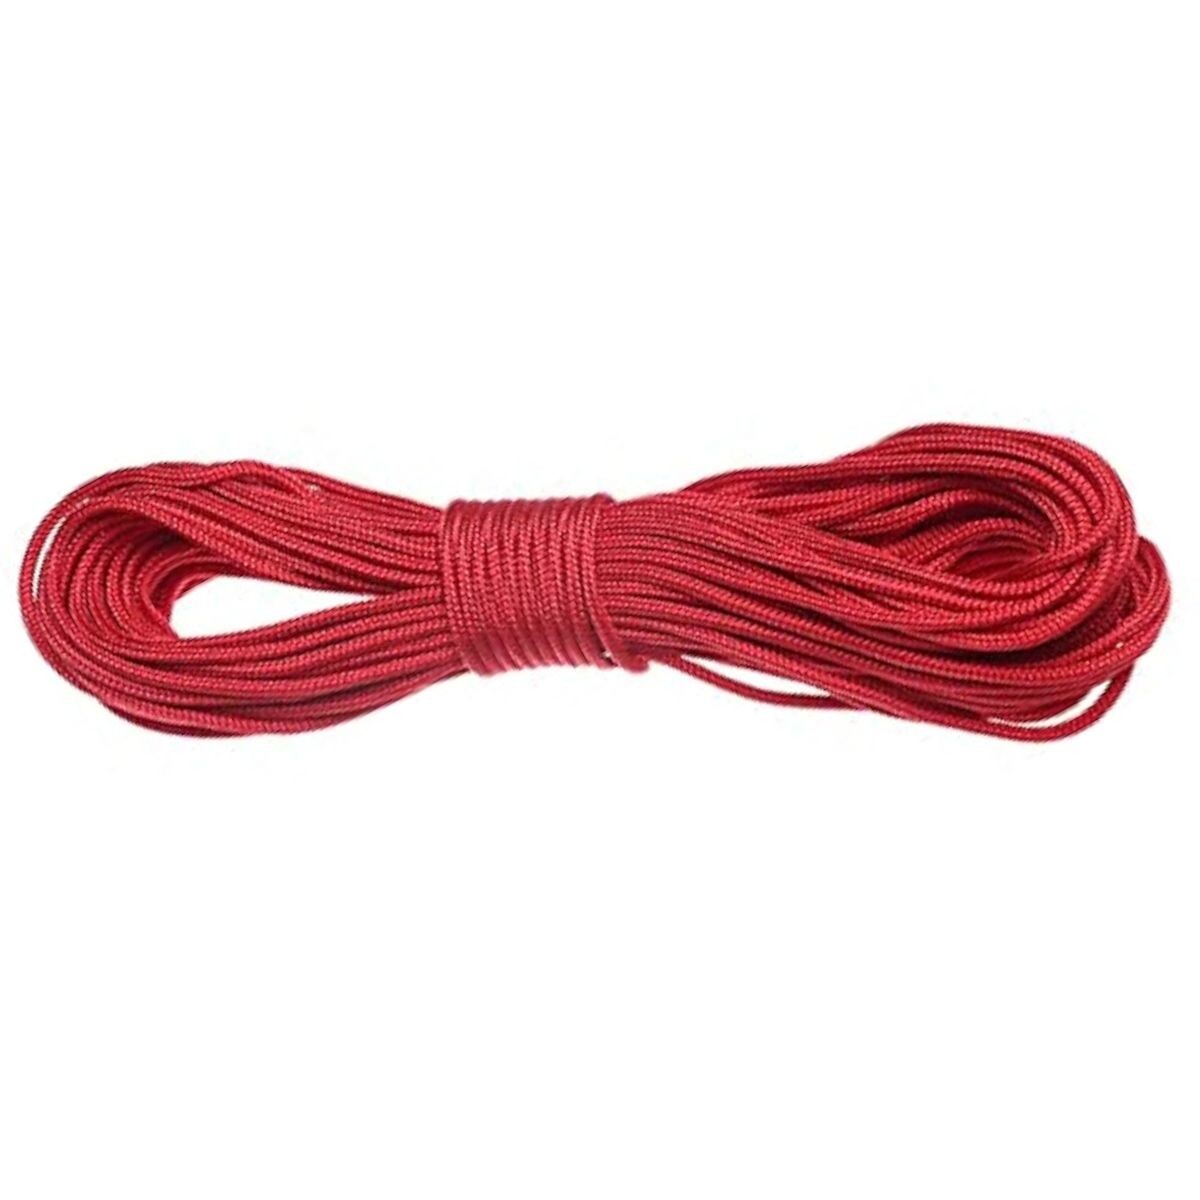 Cuerda paracord 10 metros - Rojo 